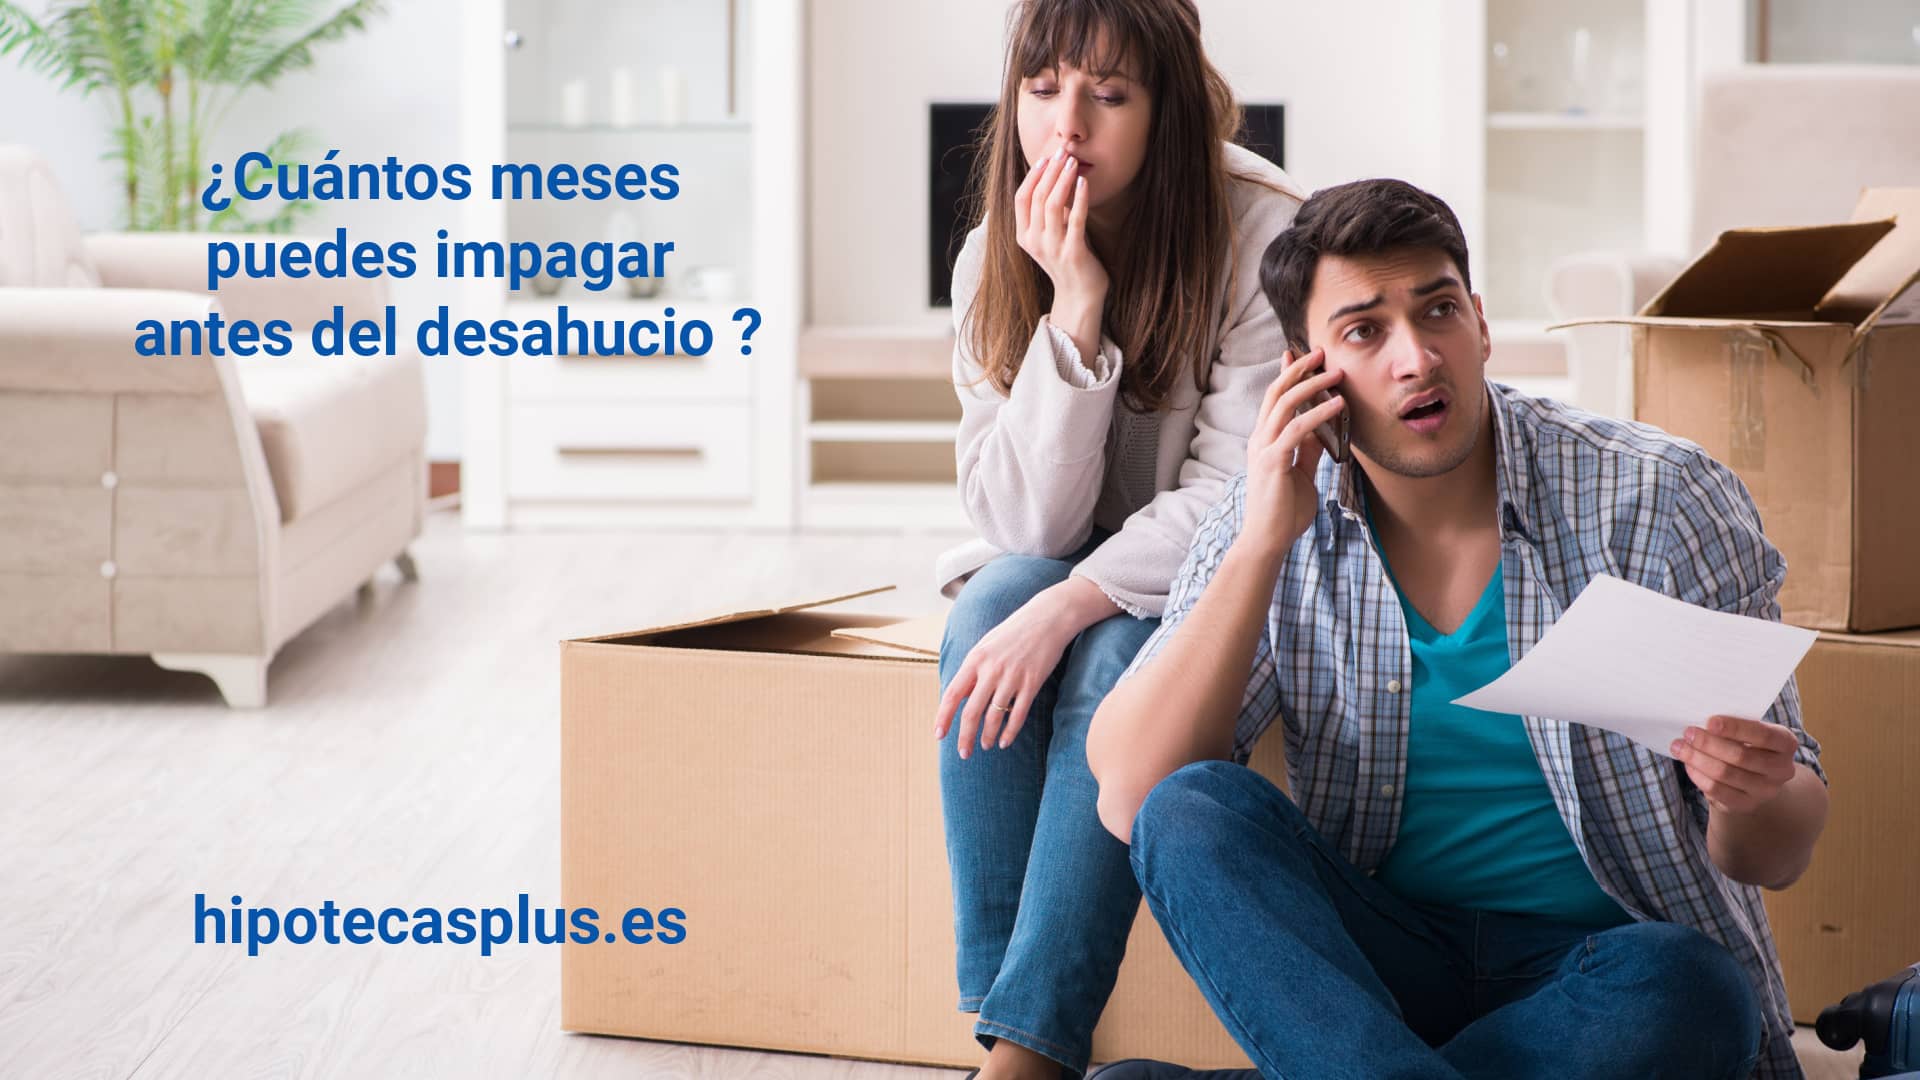 https://www.hipotecasplus.es/wp-content/uploads/HipotecasPlus-Cuantos-meses-puedes-impagar-antes-del-desahucio-2.jpg